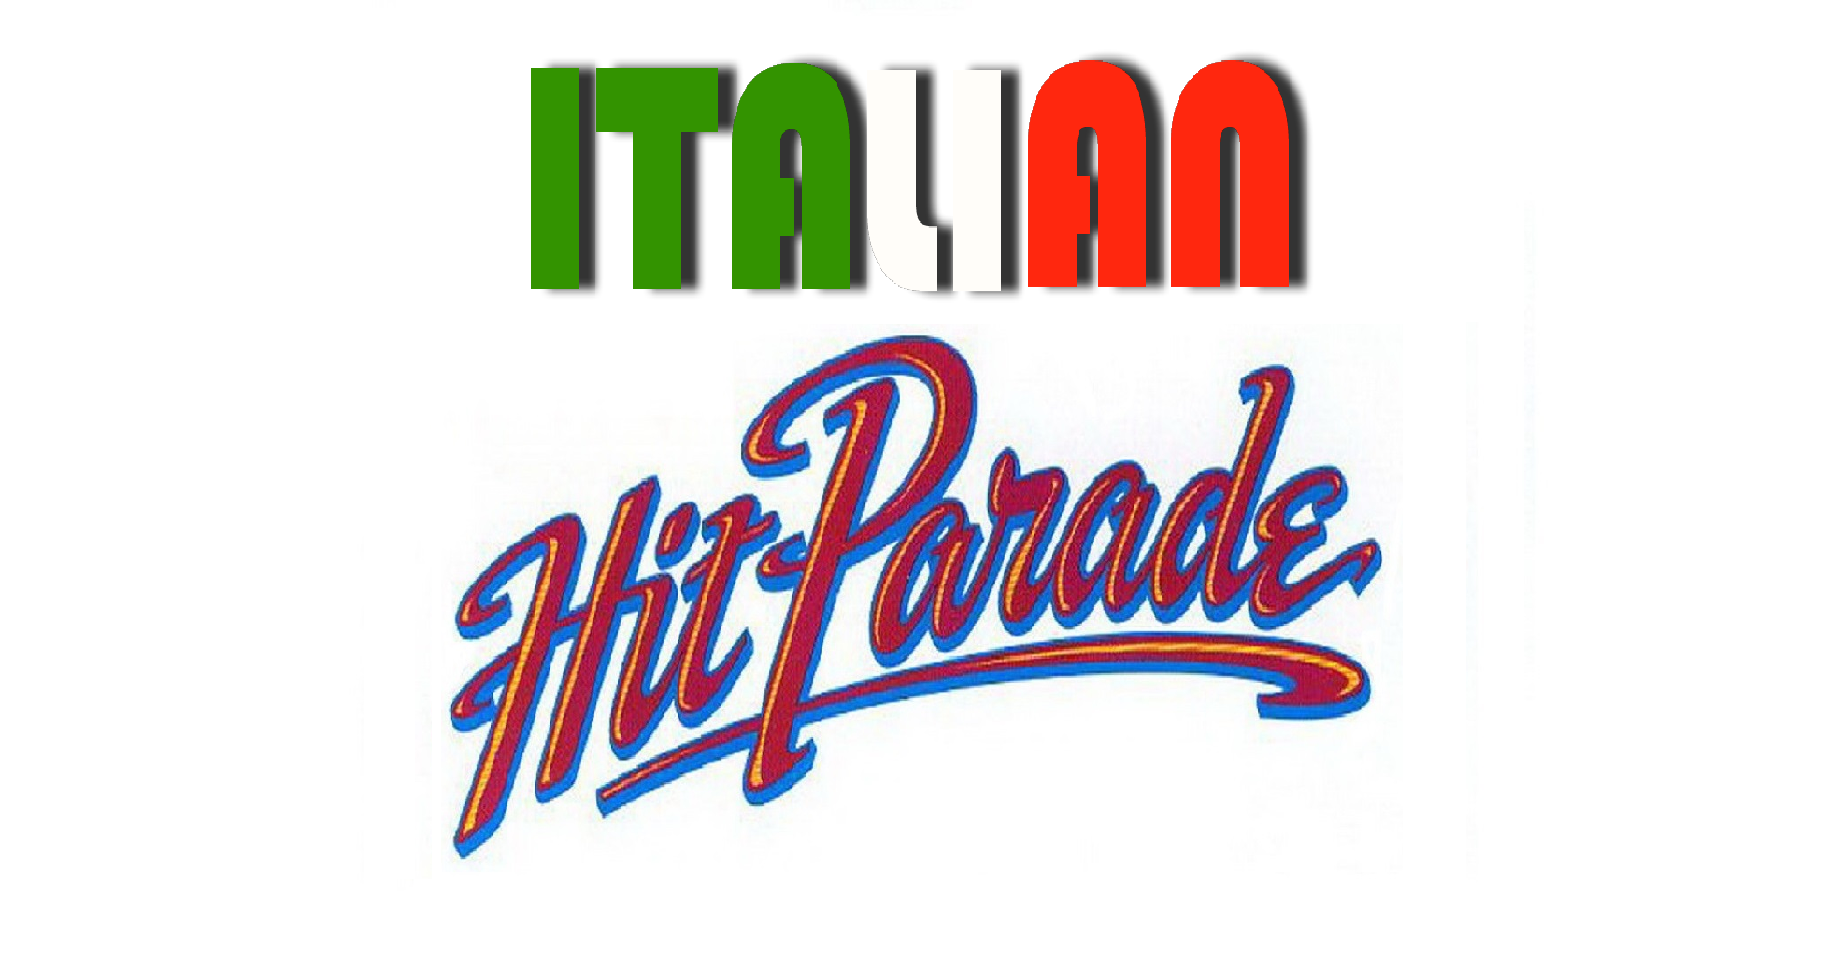 Secondo appuntamento di settembre con la rubrica “Italian Hit Parade” e le classifiche dei dischi più venduti in Italia. In quella degli Album, Zucchero – che dal 16 settembre sarà protagonista di 11 […]